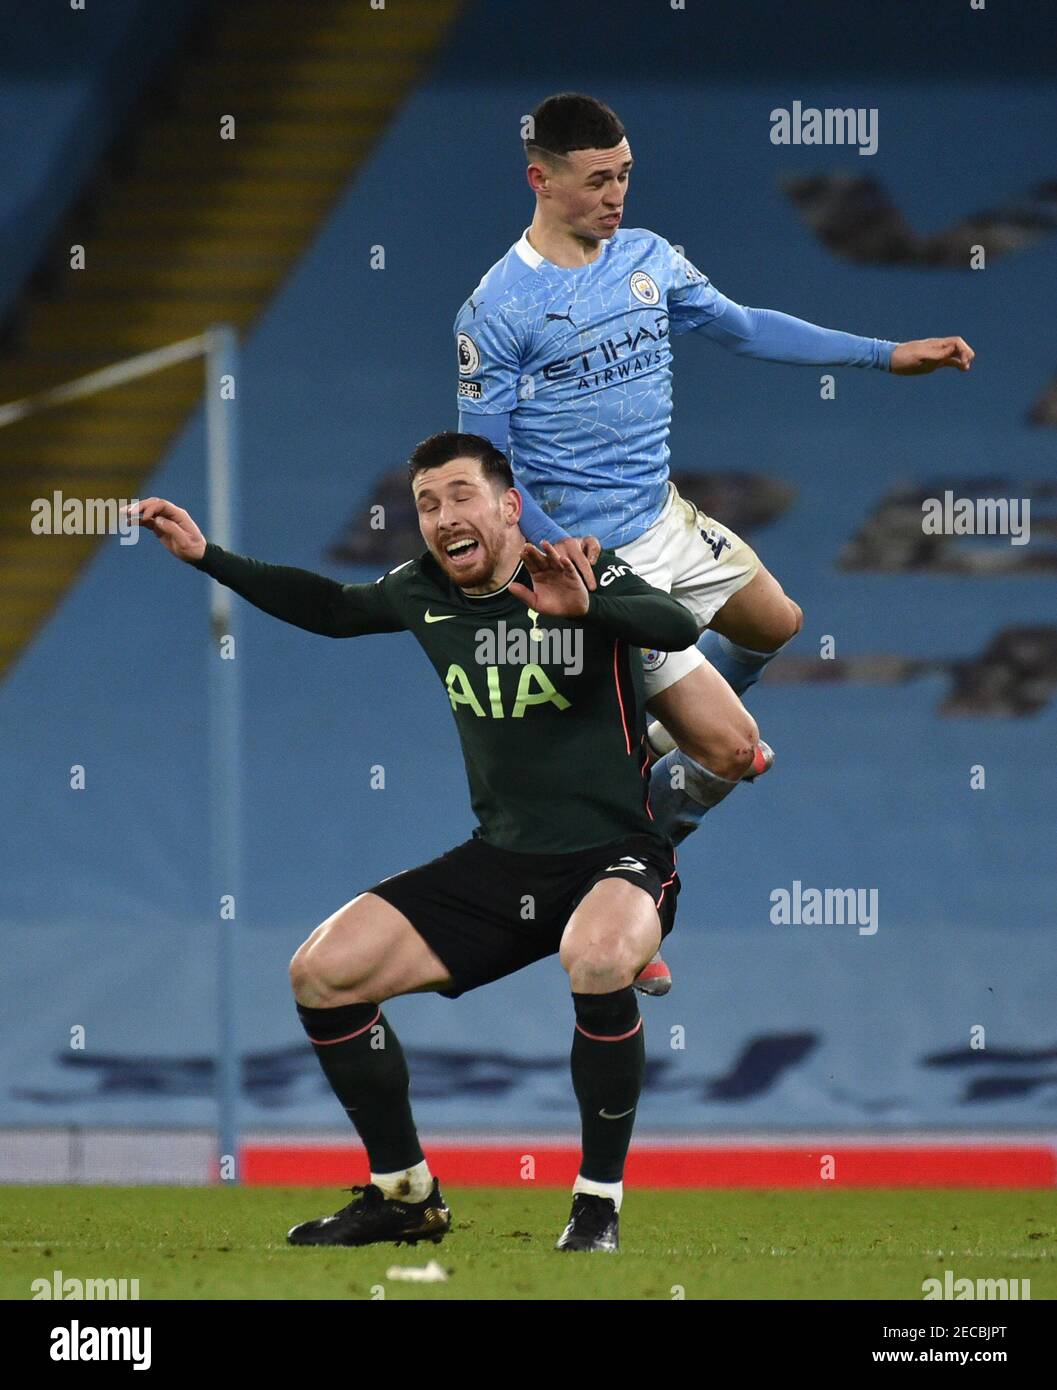 Pierre-Emile Hojbjerg von Tottenham Hotspur (unten) und Phil Foden von Manchester City (oben) kämpfen während des Premier League-Spiels im Etihad Stadium in Manchester um den Ball in der Luft. Bilddatum: Samstag, 13. Februar 2021. Stockfoto